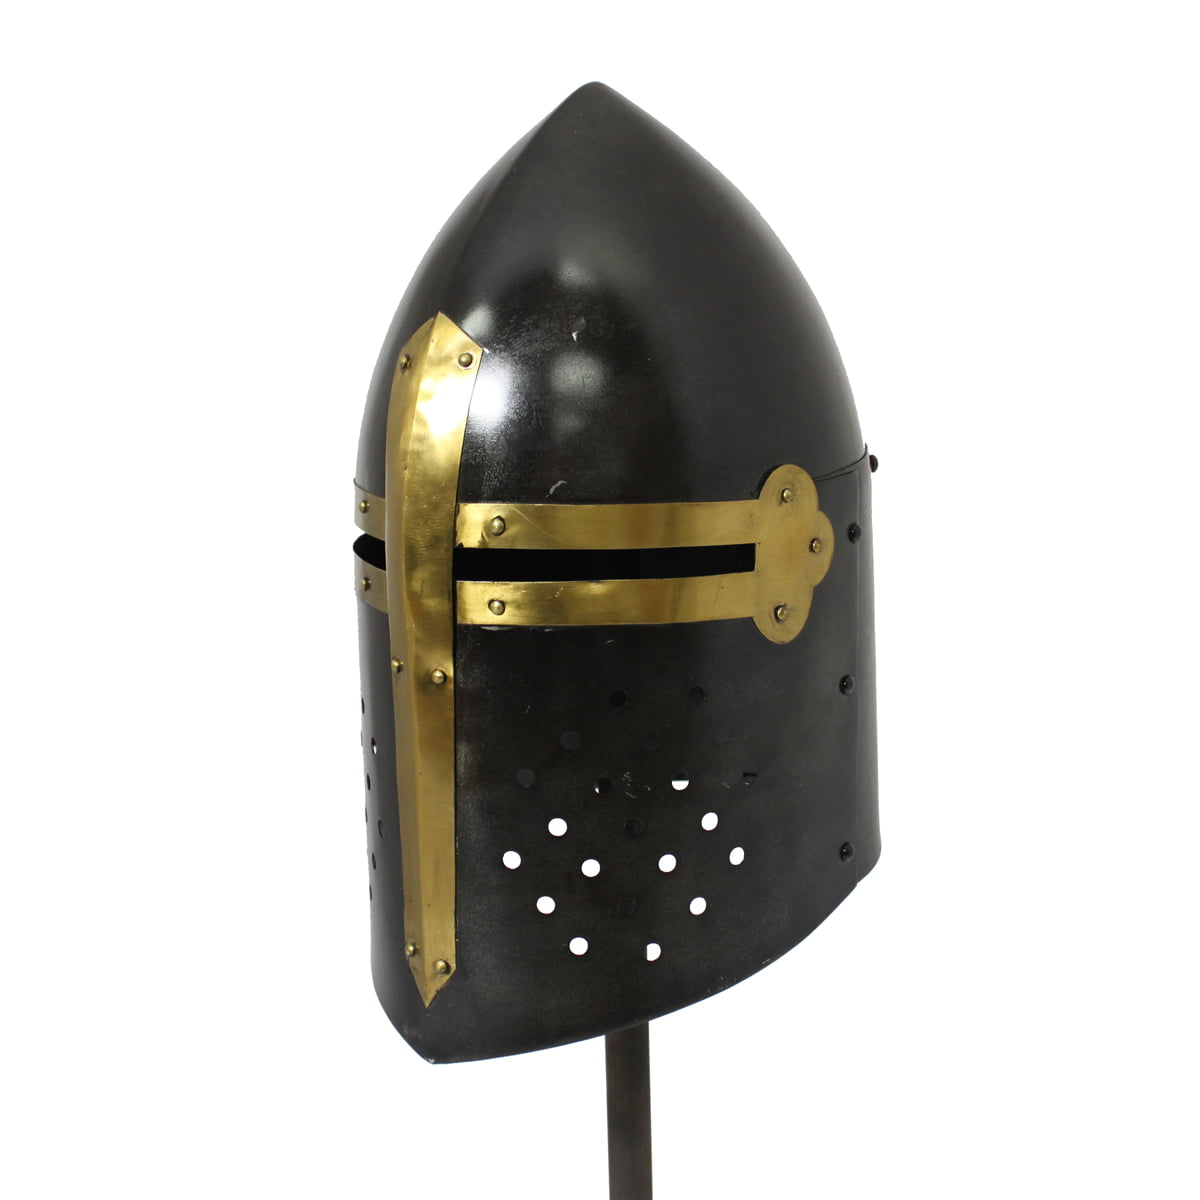 Medieval Sugar Loaf Armor Helmet One Size 